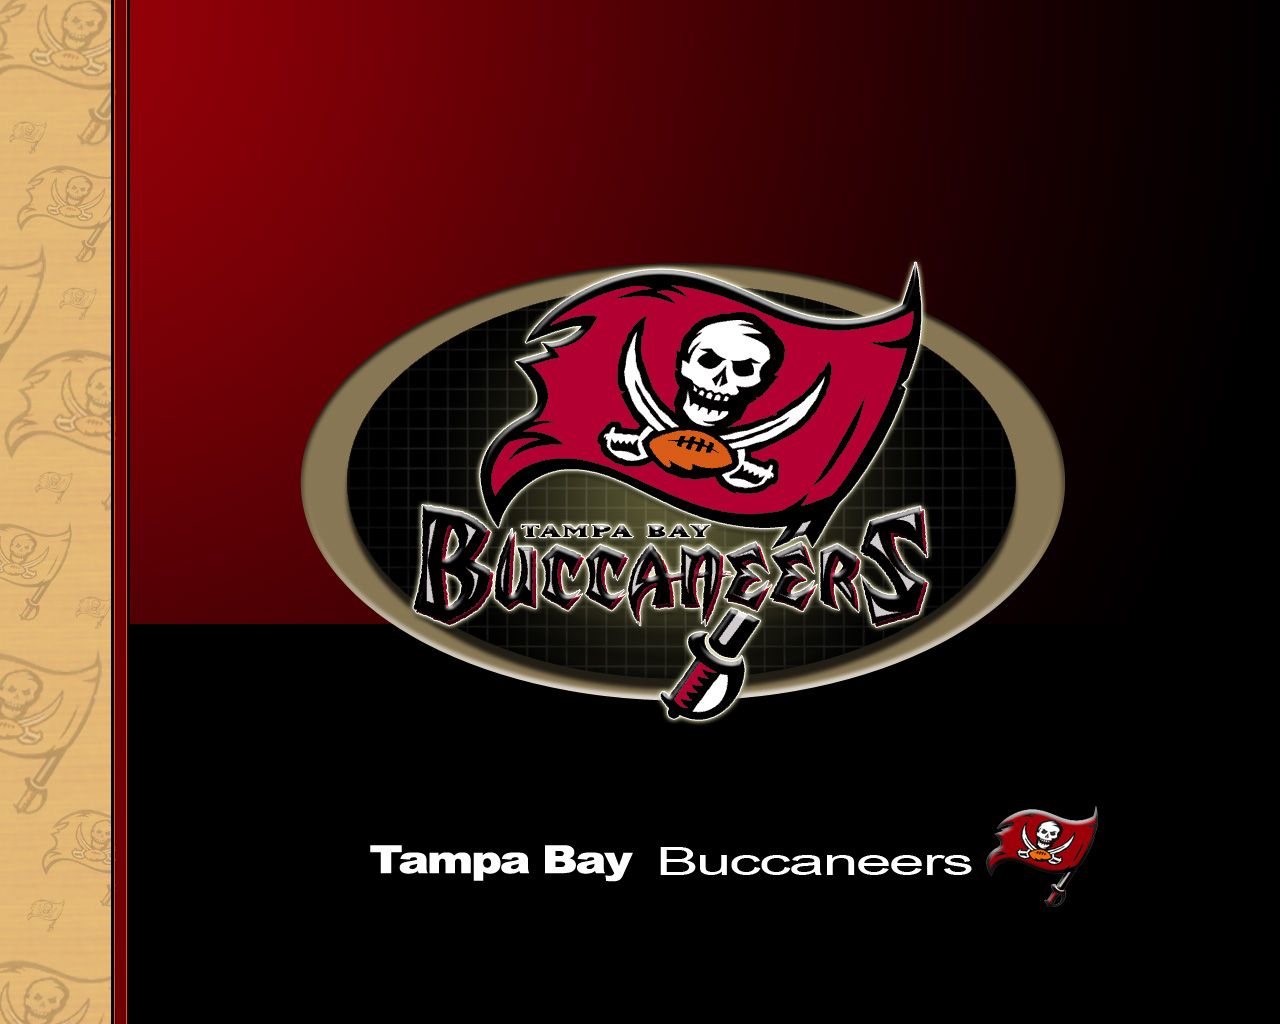 Tampa Bay Buccaneers Wallpapers  Top 30 Best Tampa Bay Buccaneers  Wallpapers  HQ 